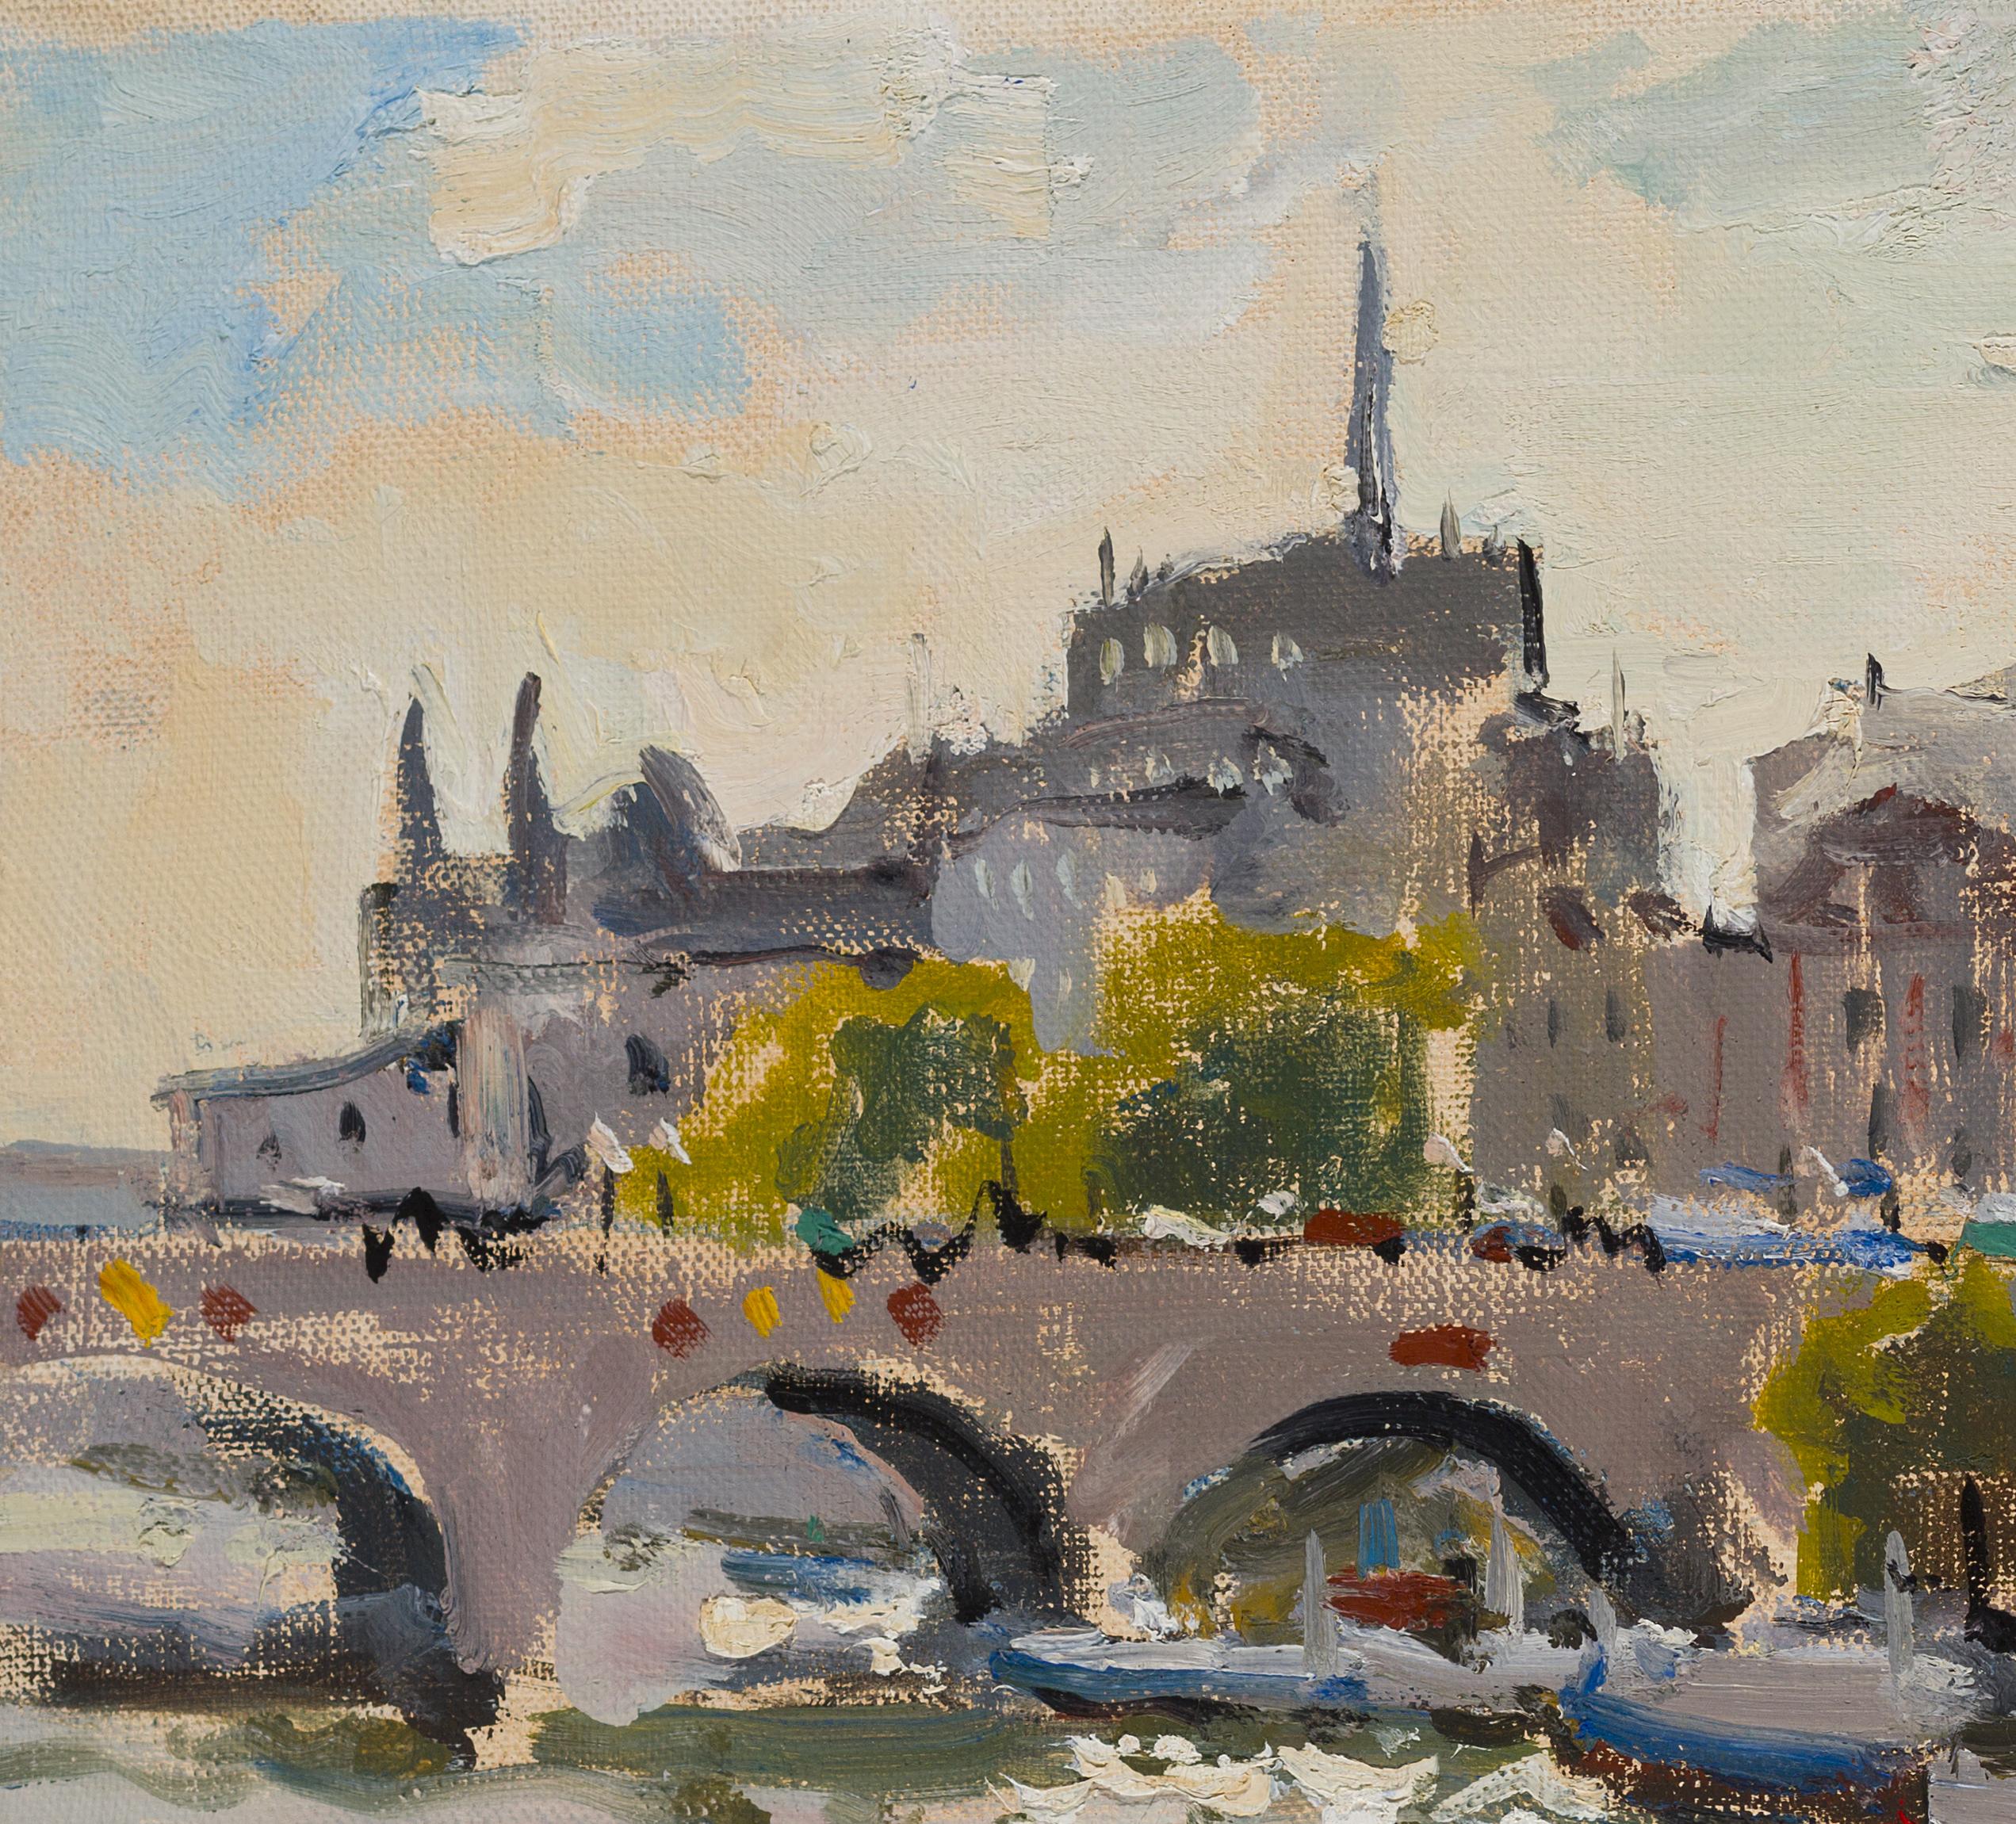 Seine. Paris - 21st Century Contemporary Impressionism Landscape Oil Painting For Sale 1